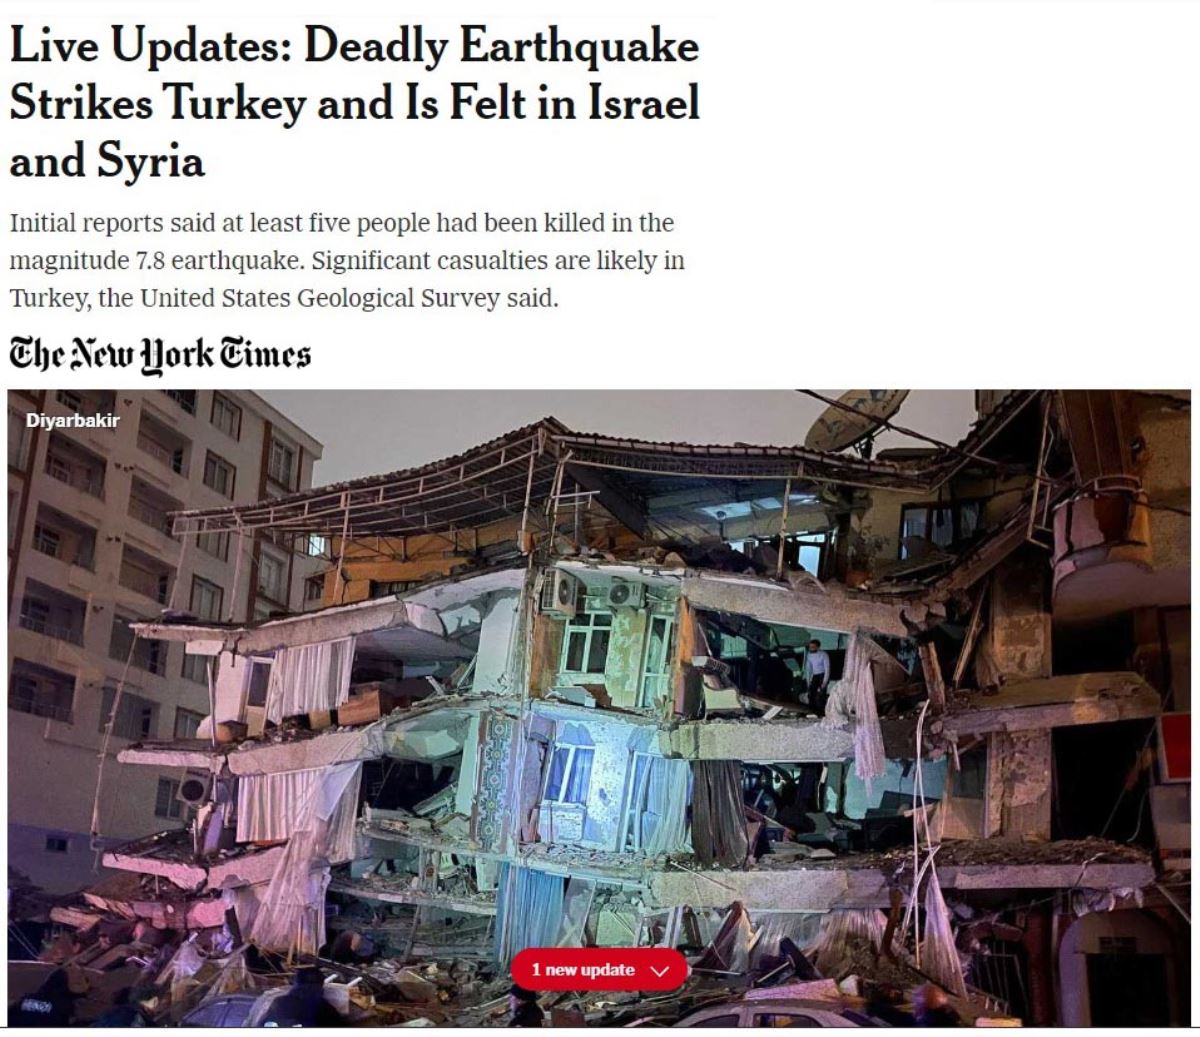 <br><p>NY Times, Canlı Güncellemeler: <strong>Ölümcül Deprem Türkiye'yi Çarptı ve İsrail ve Suriye'de Hissedildi 7.8 büyüklüğündeki depremde ilk belirlemelere göre çok sayıda kişi hayatını kaybetti</strong> ifadelerine yer verirken, ABD Jeoloji Araştırma Merkezi, Türkiye'de önemli kayıpların olma ihtimalinin yüksek olduğunu duyurdu denildi.</p><br>